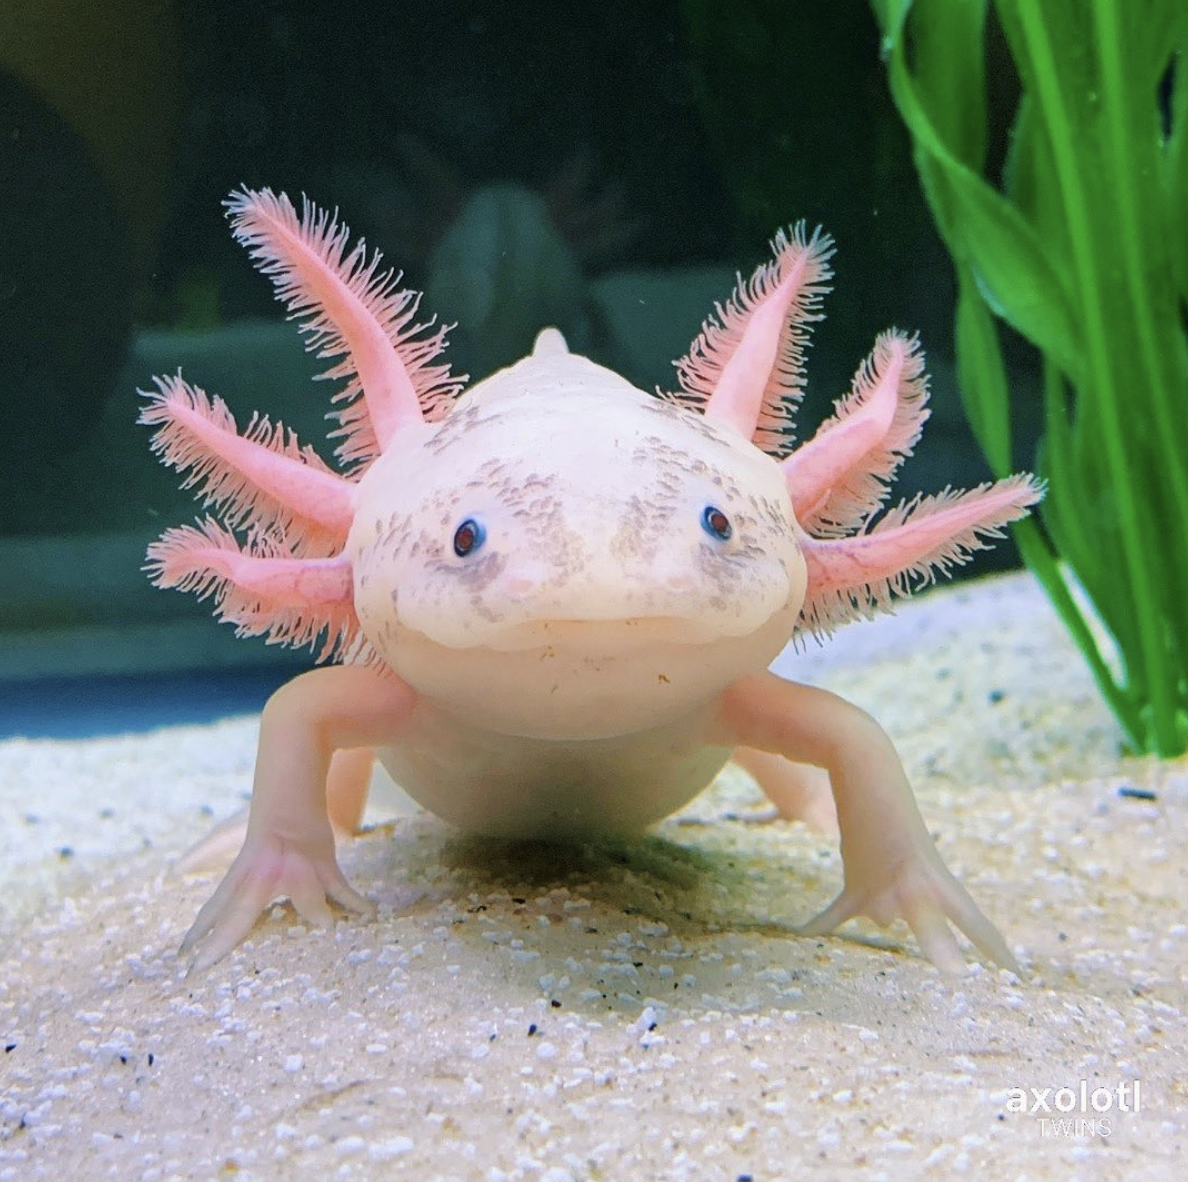 Axolotl clear slime